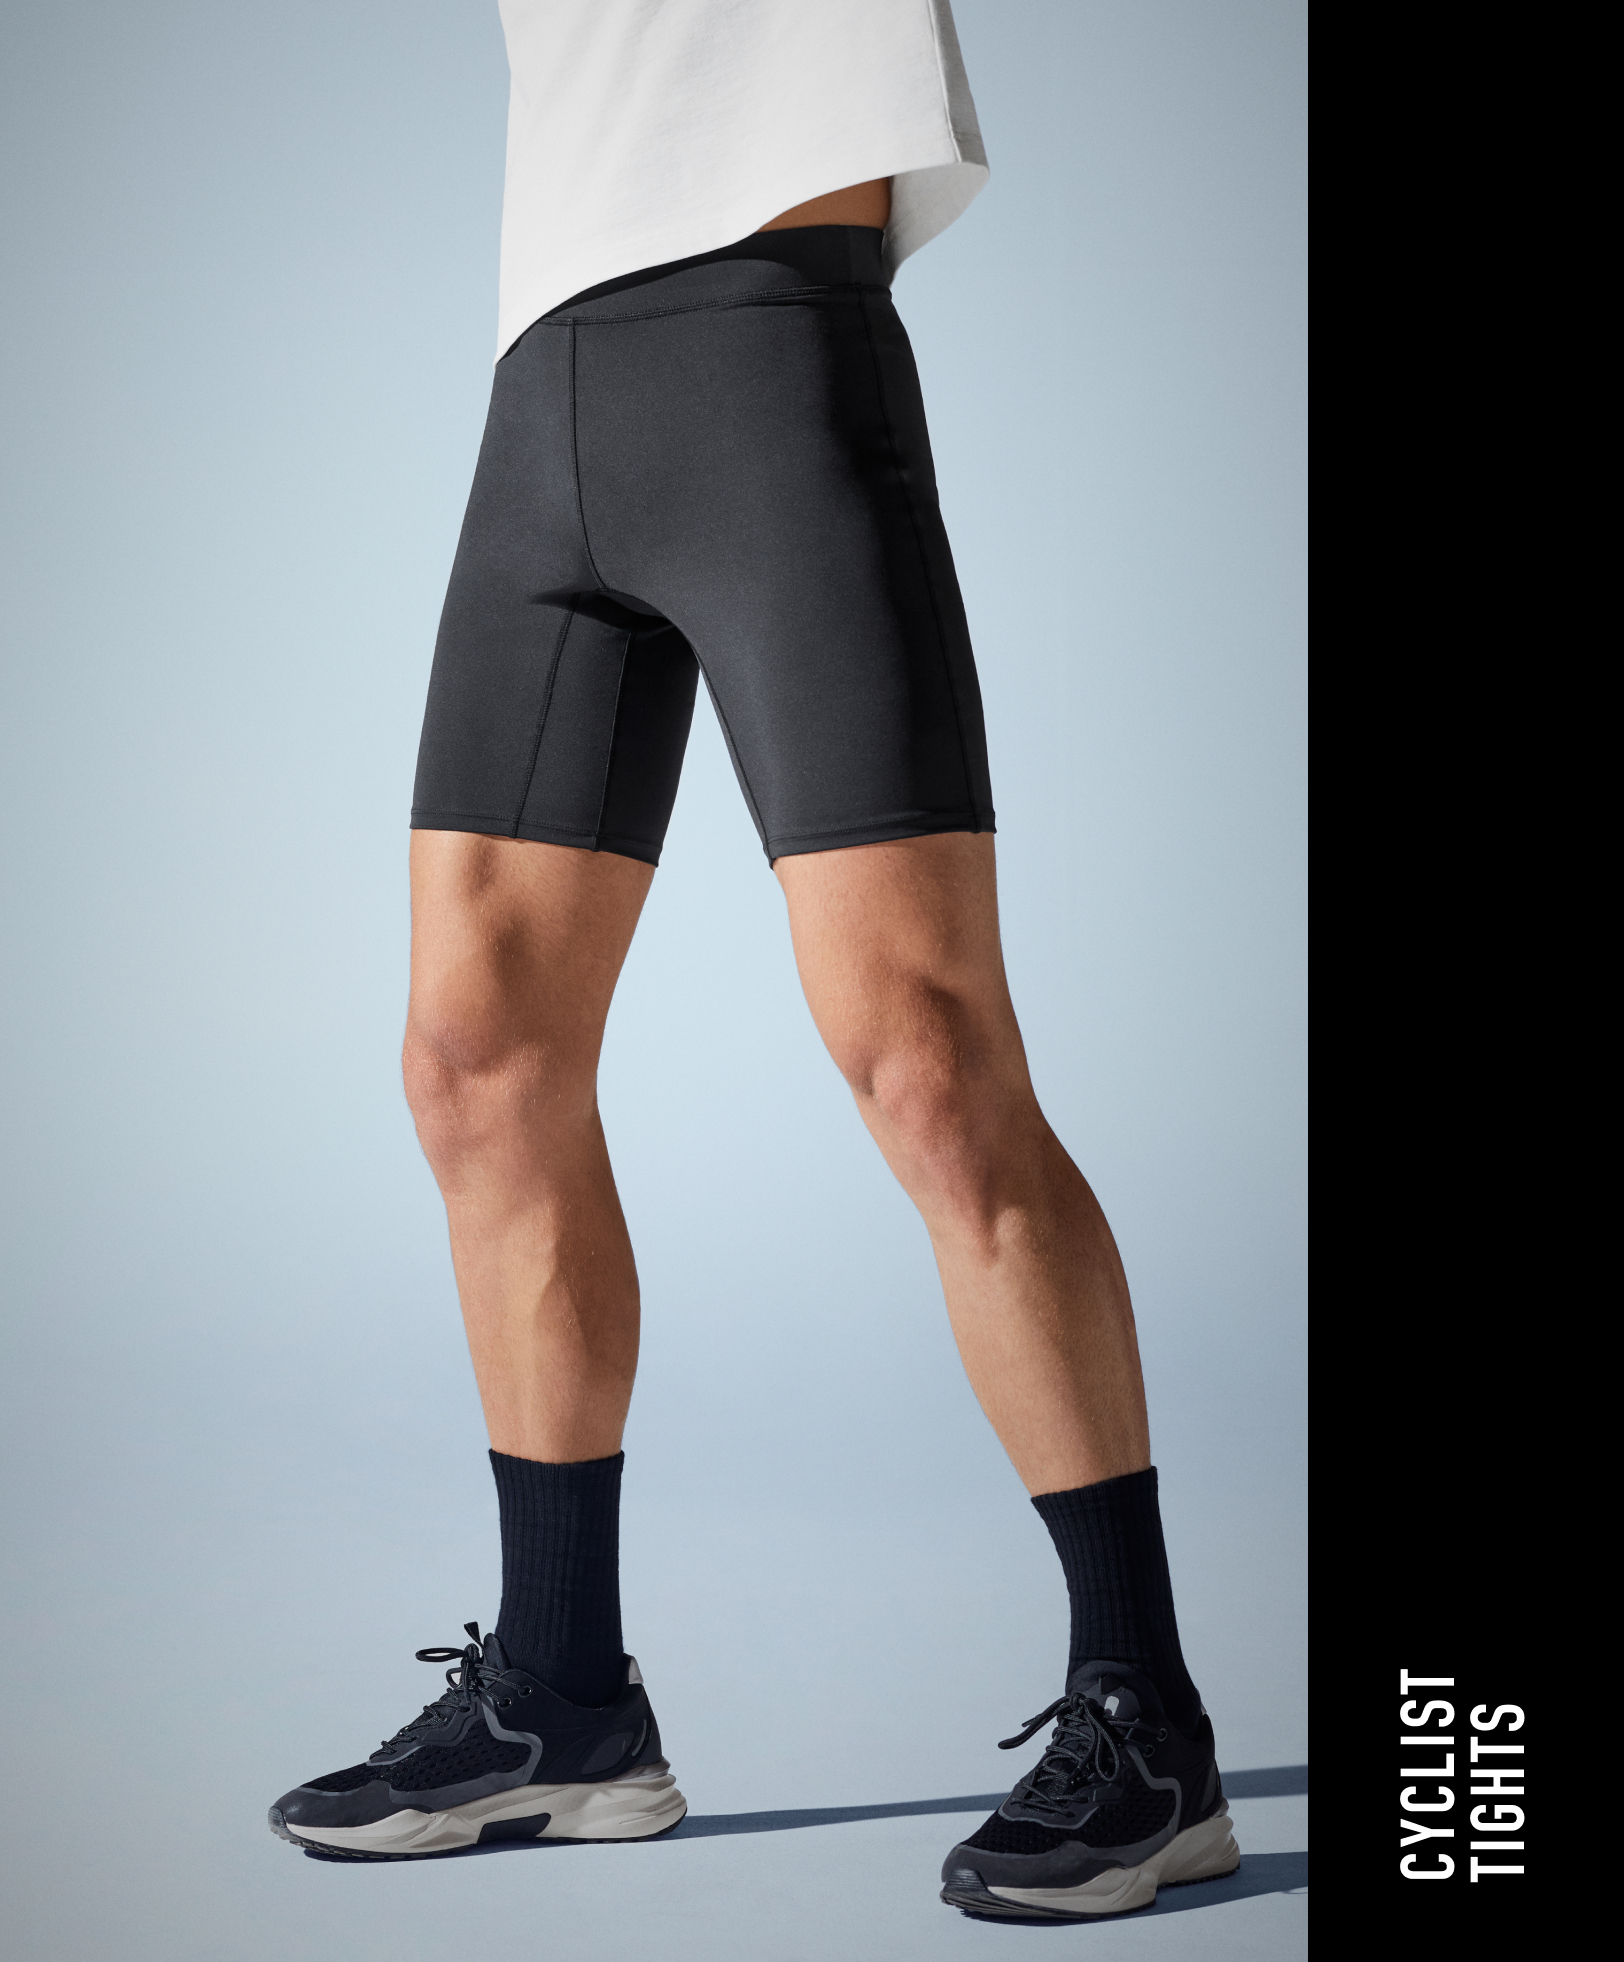 Cycle shorts